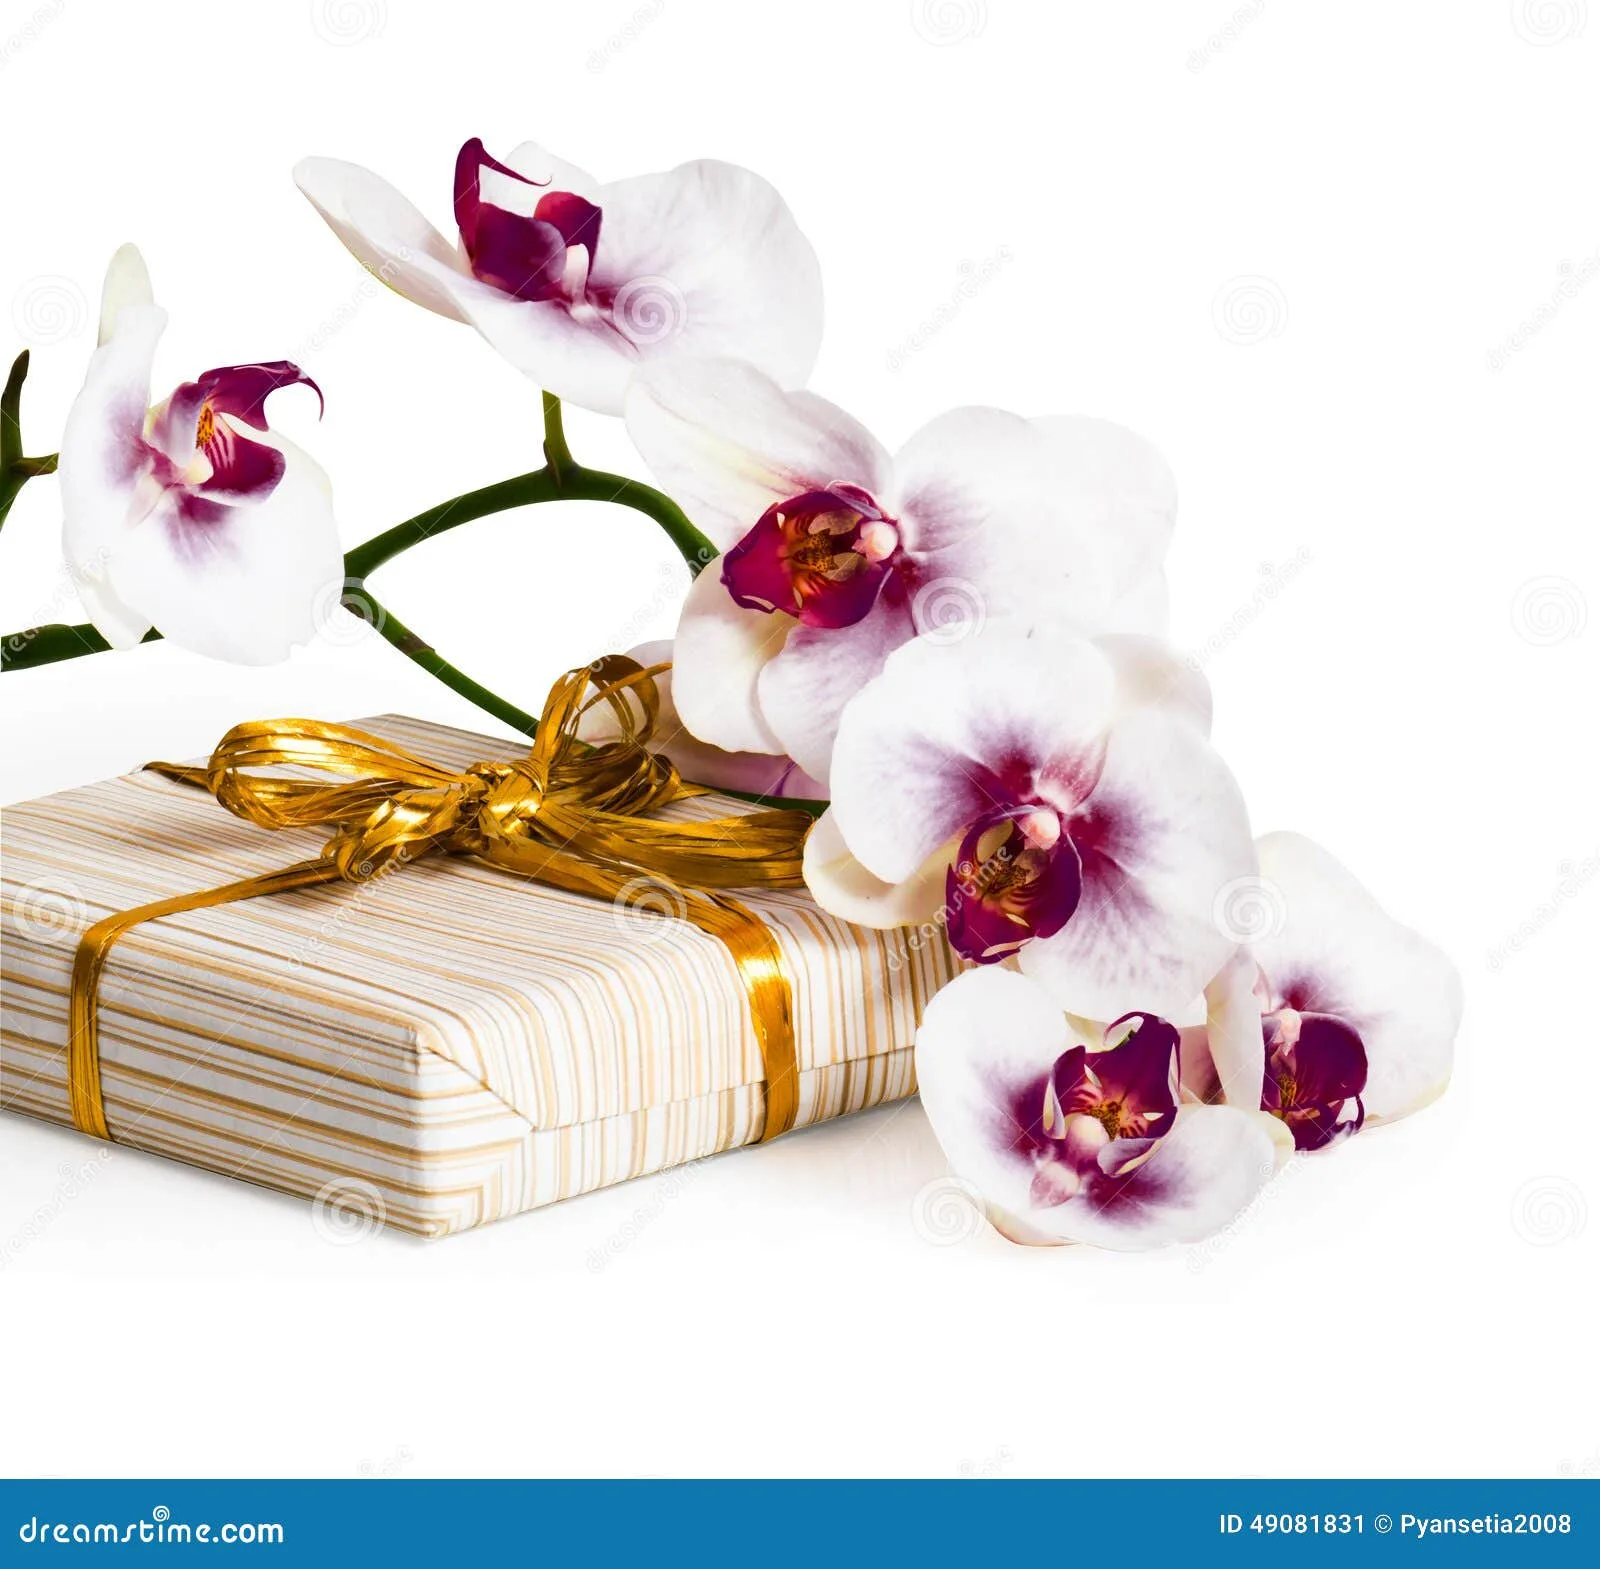 Фото Стихи к подарку орхидея #47